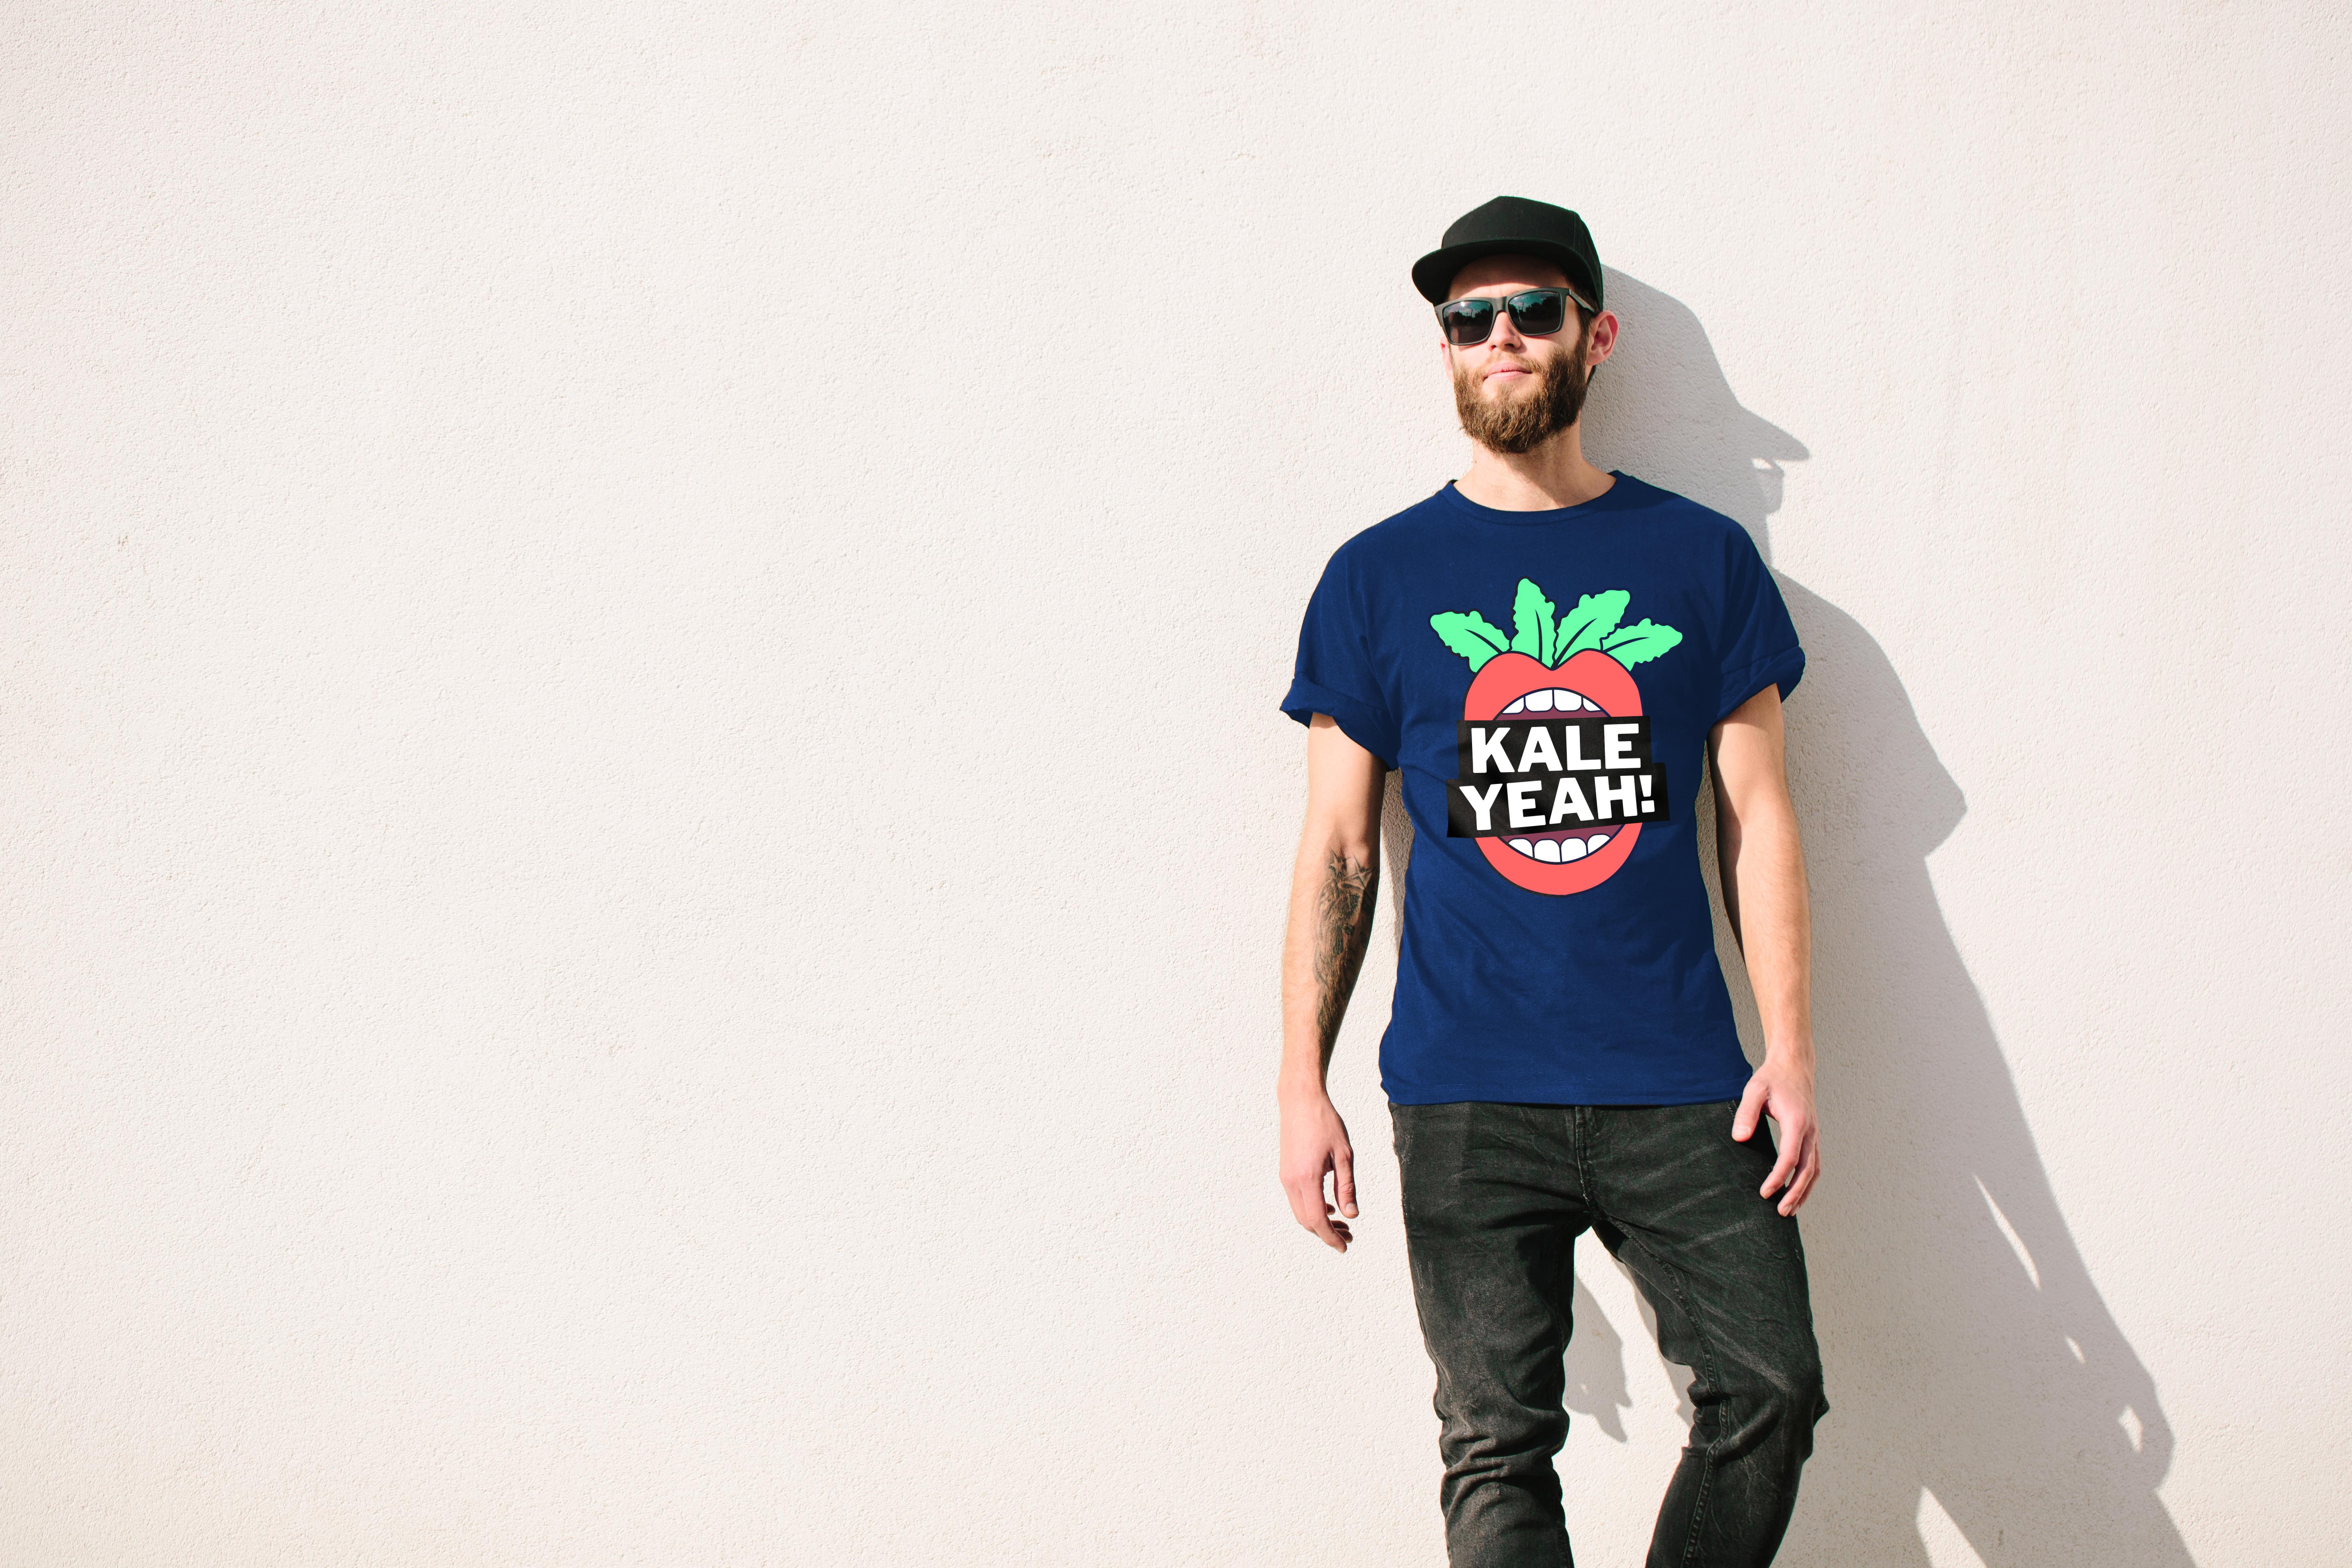 Man wearing a Kale Yeah! t-shirt